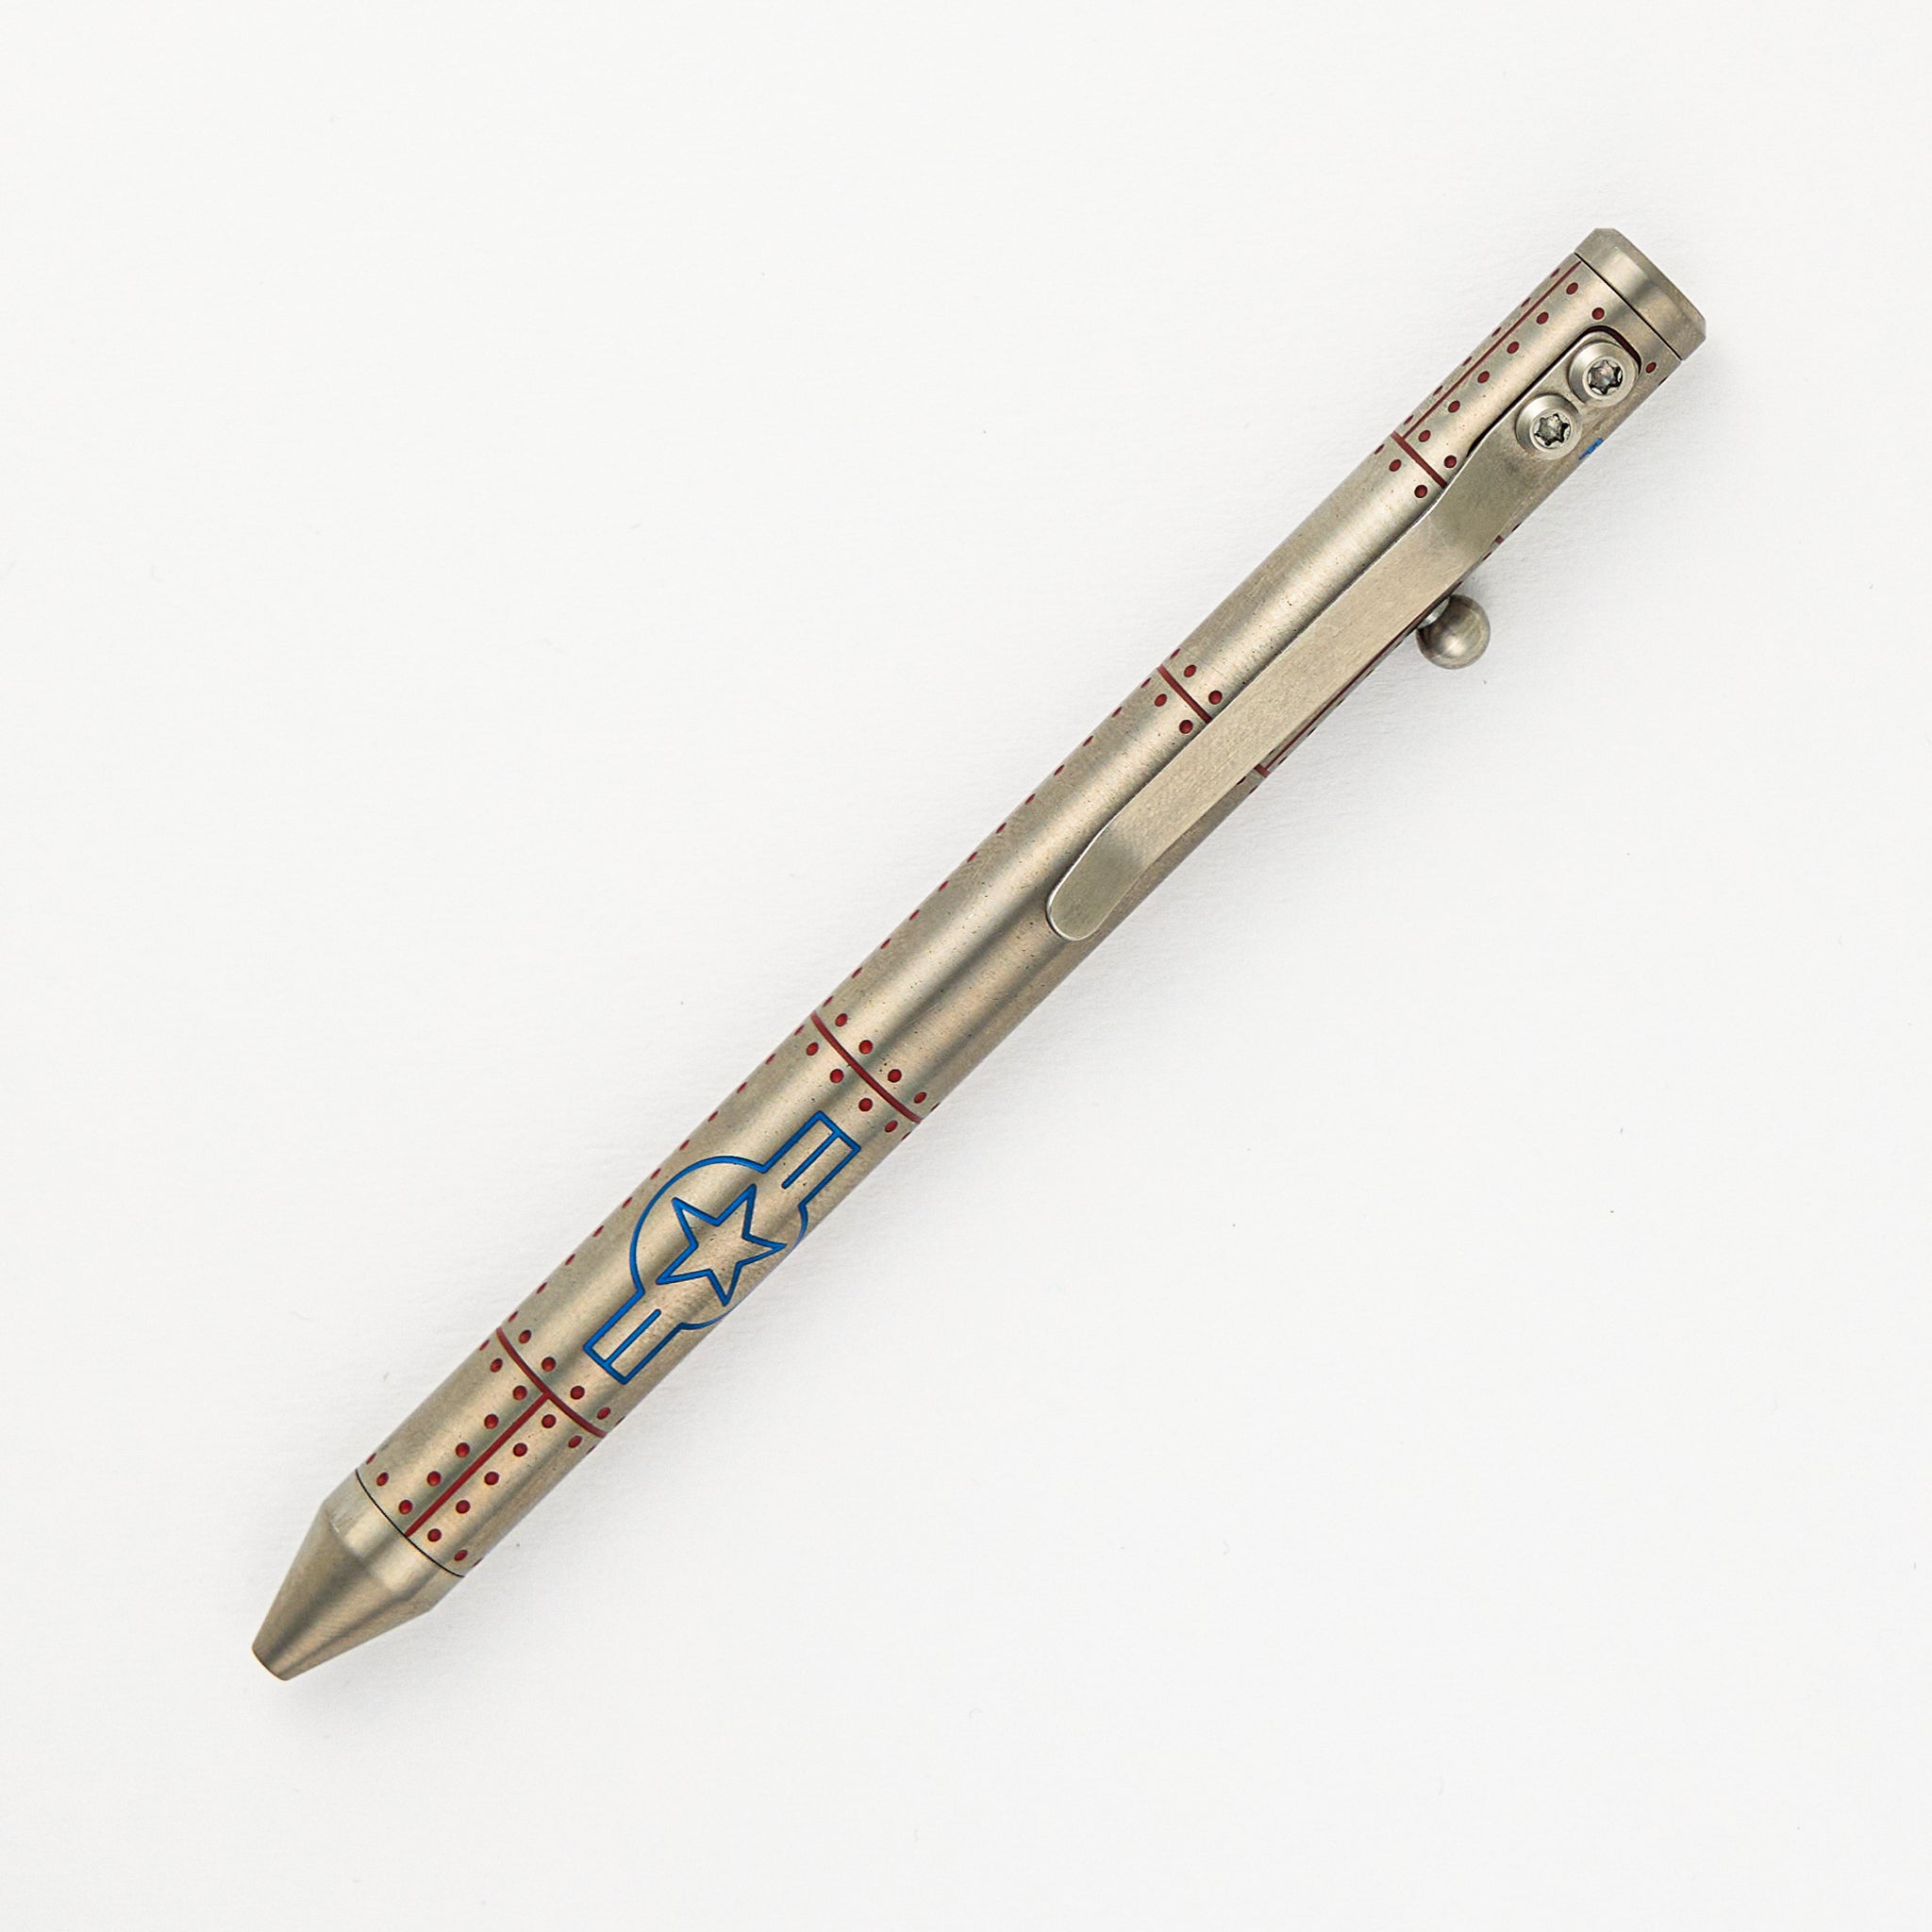 Fellhoelter/Cptn Axel Full Size TiBolt Pen - WW3 Merika Titanium